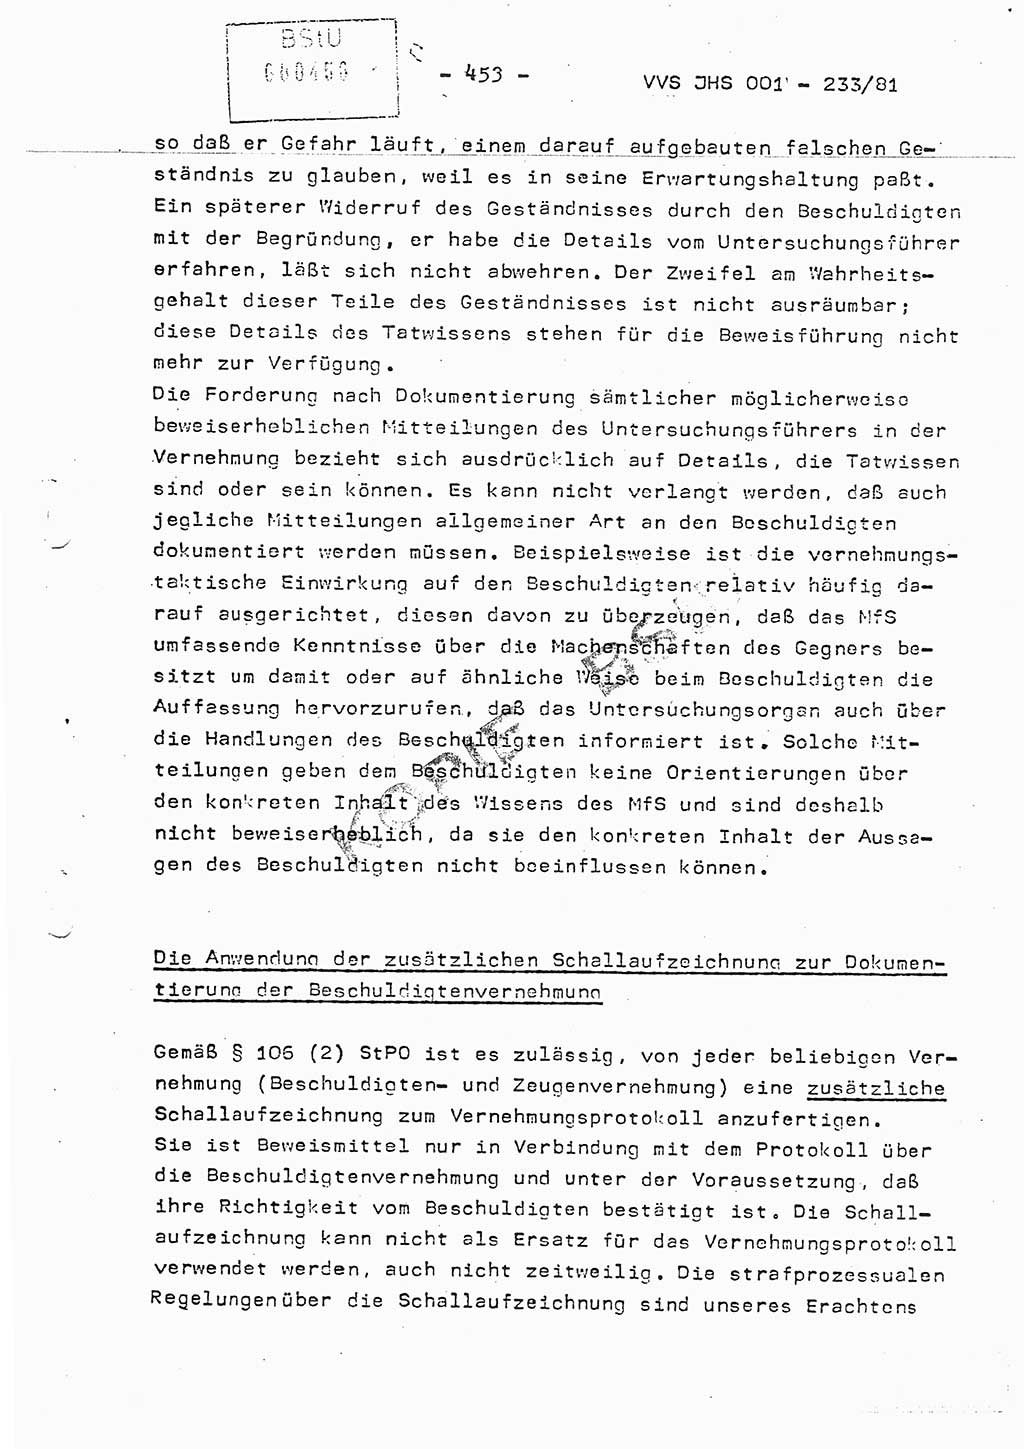 Dissertation Oberstleutnant Horst Zank (JHS), Oberstleutnant Dr. Karl-Heinz Knoblauch (JHS), Oberstleutnant Gustav-Adolf Kowalewski (HA Ⅸ), Oberstleutnant Wolfgang Plötner (HA Ⅸ), Ministerium für Staatssicherheit (MfS) [Deutsche Demokratische Republik (DDR)], Juristische Hochschule (JHS), Vertrauliche Verschlußsache (VVS) o001-233/81, Potsdam 1981, Blatt 453 (Diss. MfS DDR JHS VVS o001-233/81 1981, Bl. 453)